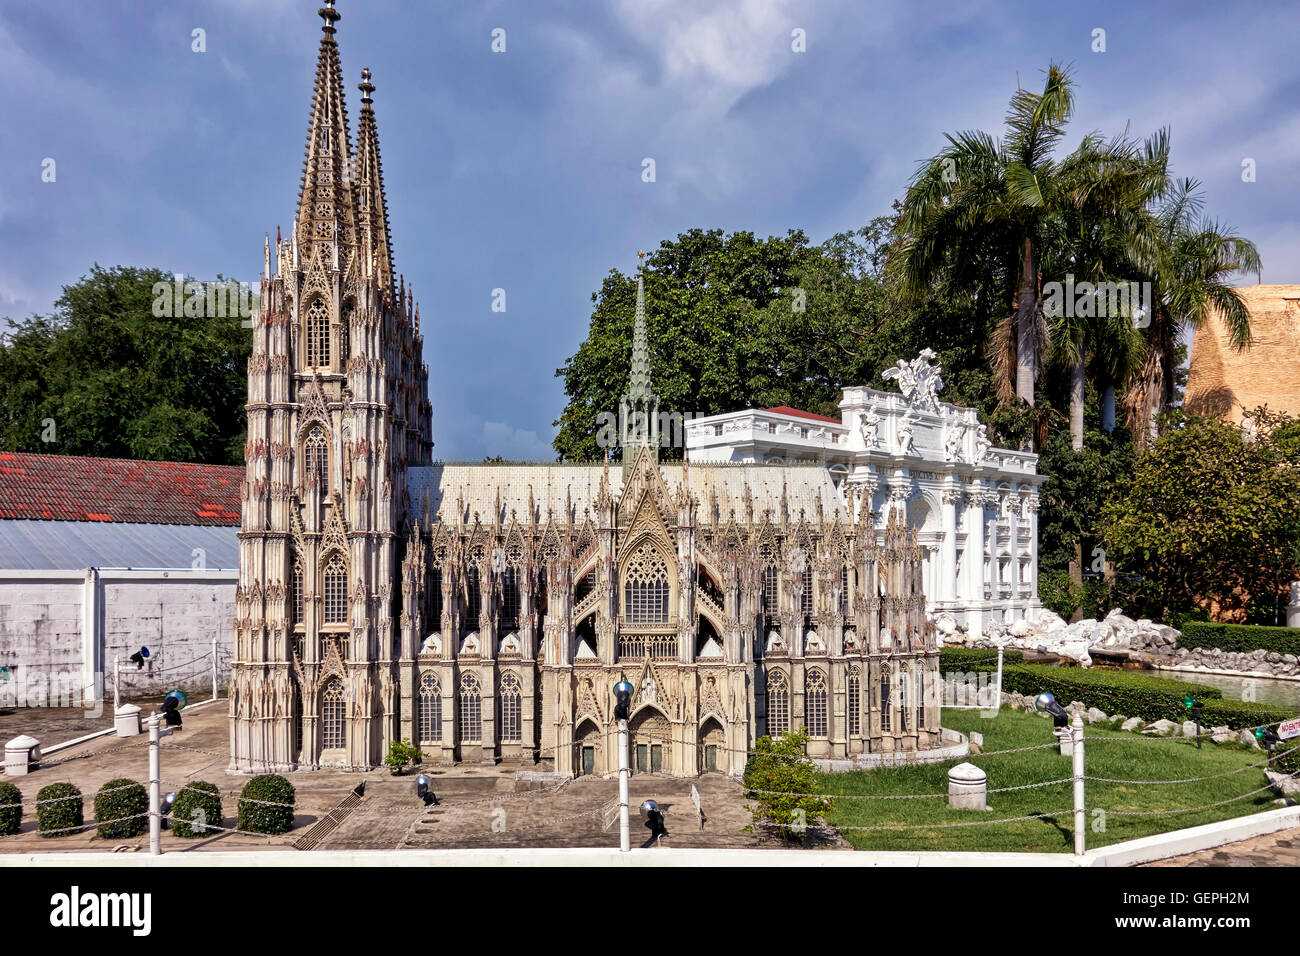 Monde miniature. Modèle d'échelle de la cathédrale de Cologne. Mini parc à thème Siam, Pattaya Thaïlande, S. E. Asie Banque D'Images